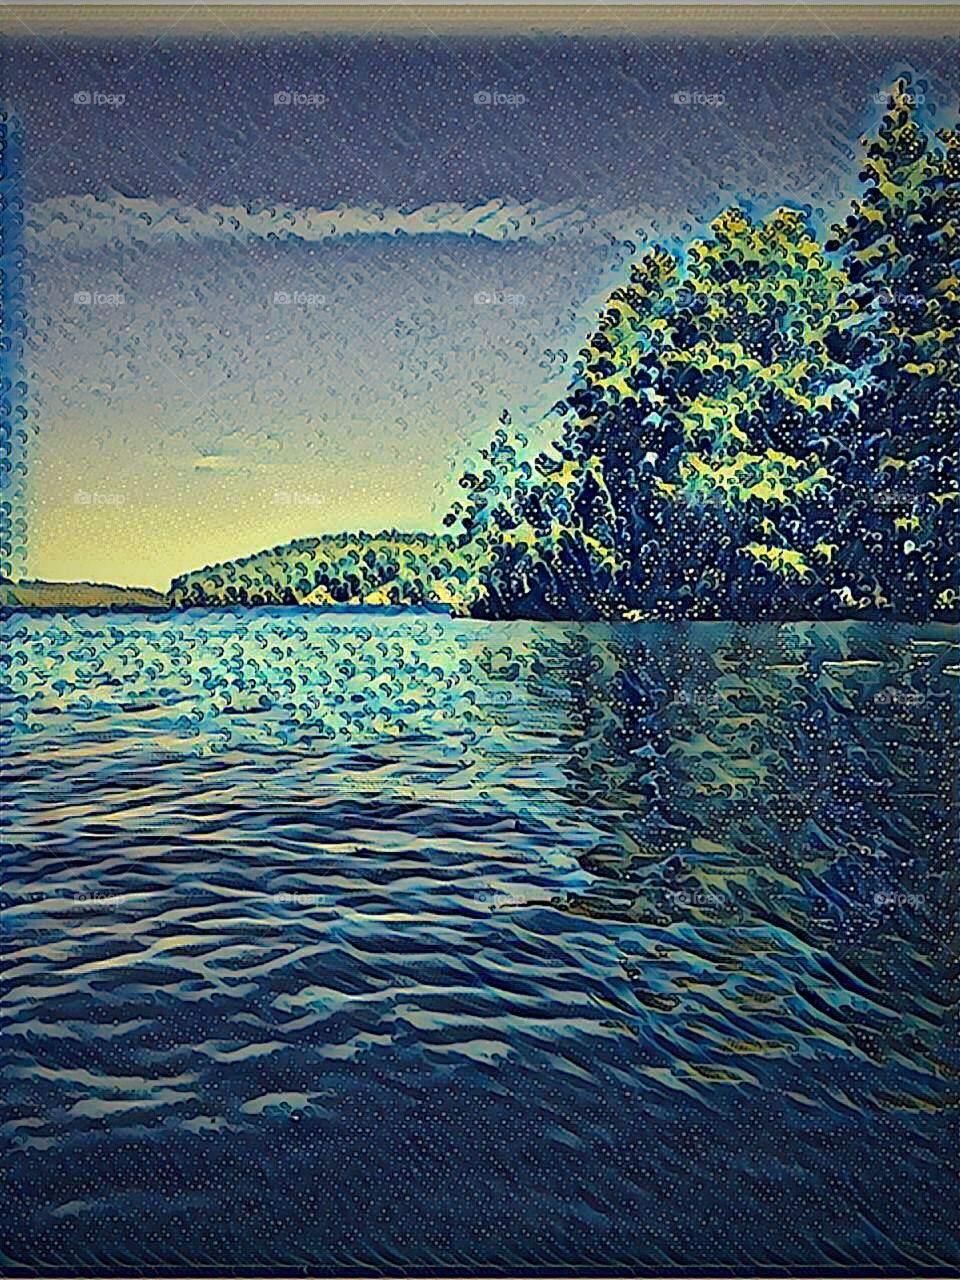 Lake view art (photoshopped with Prisma)